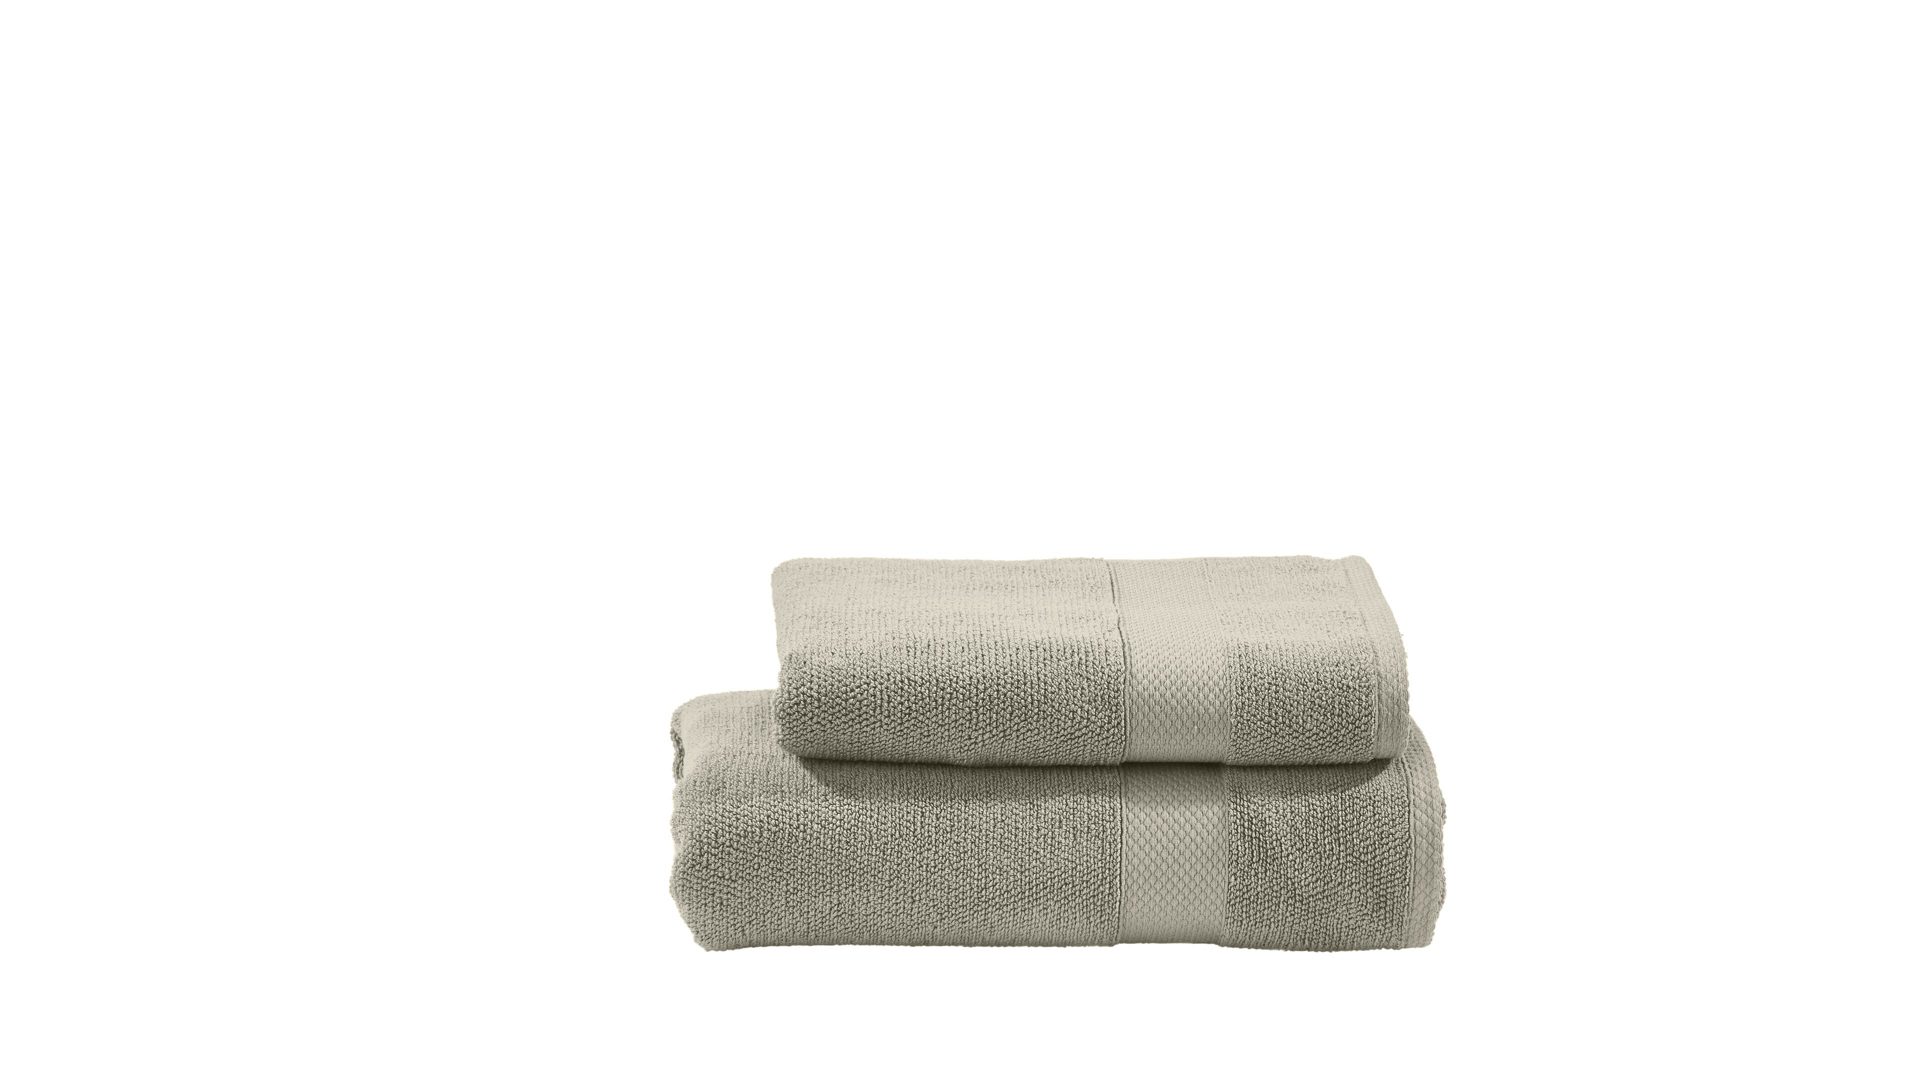 Handtuch-Set Done.® be different aus Stoff in Beige DONE.® Handtuch-Set Deluxe bzw. Heimtextilien taupefarbene Baumwolle  – zweiteilig